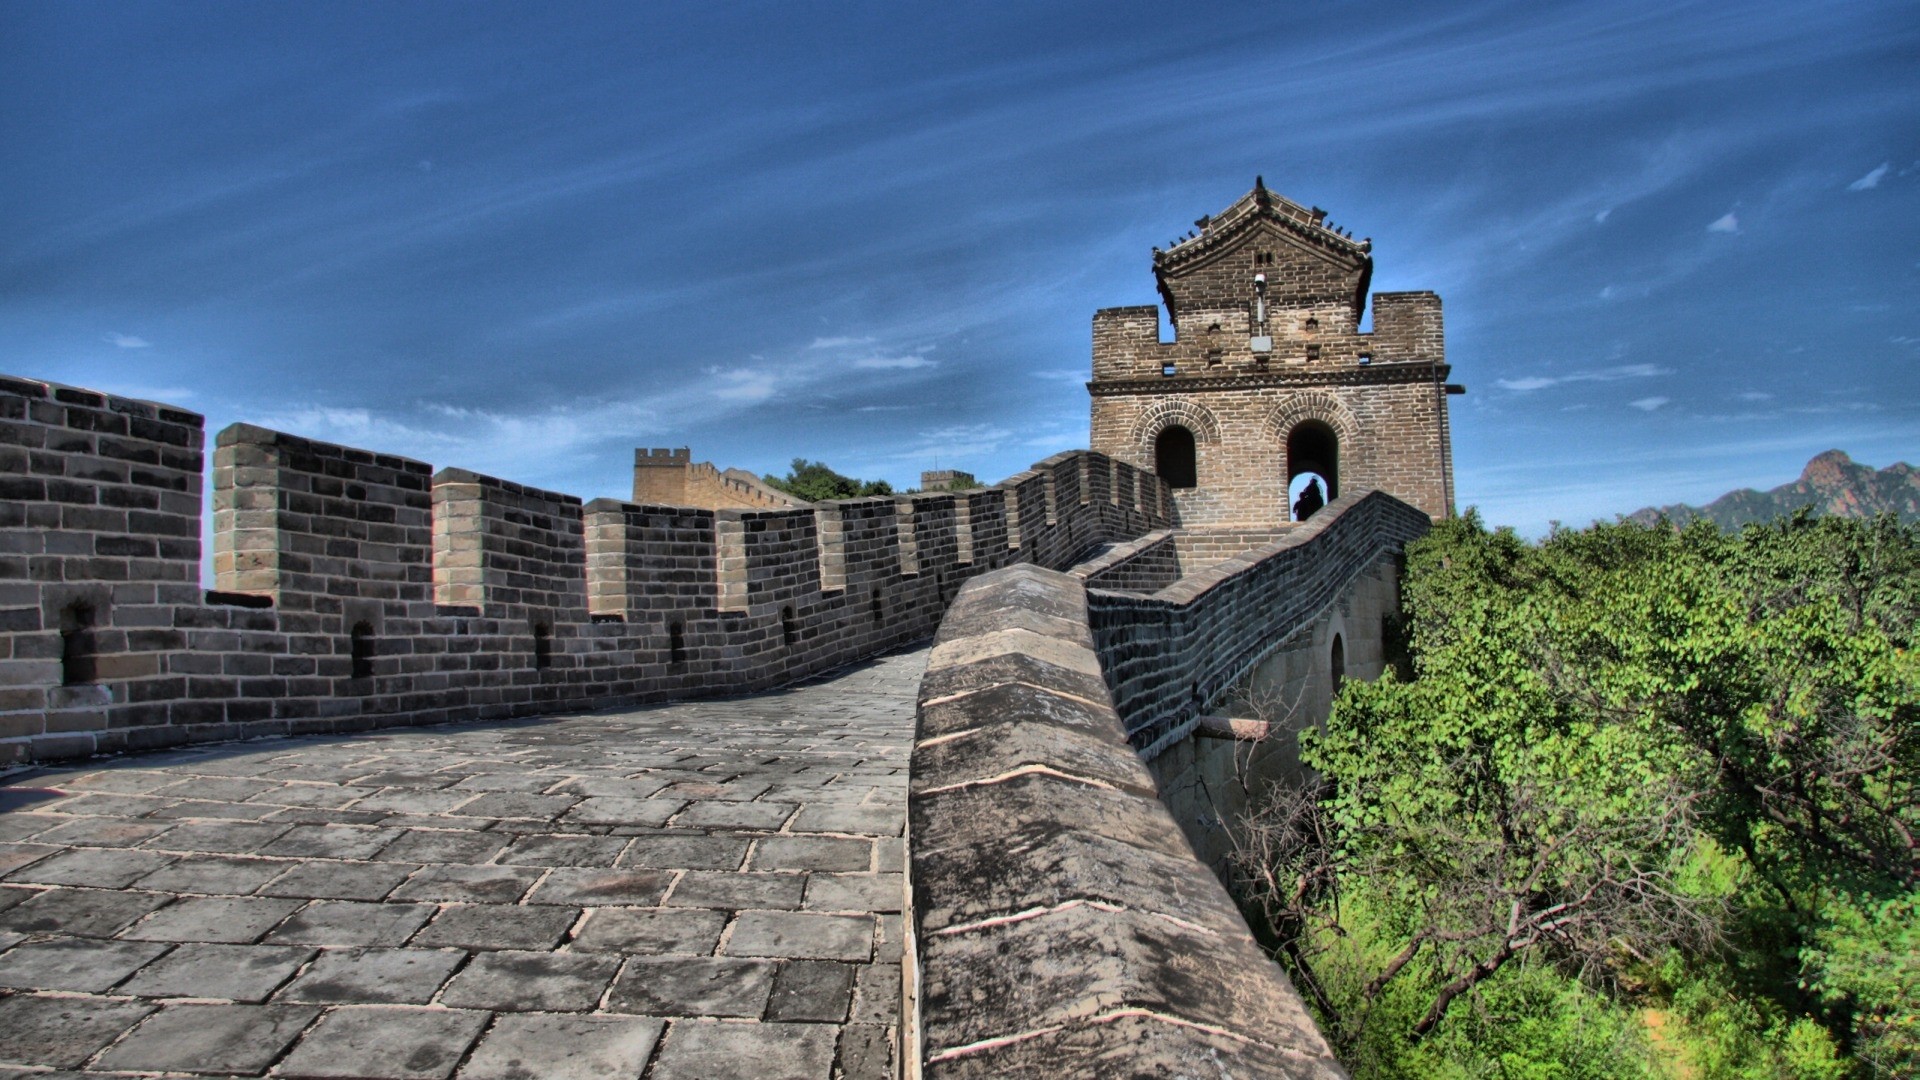 Great Wall Of China wallpaper photo hd